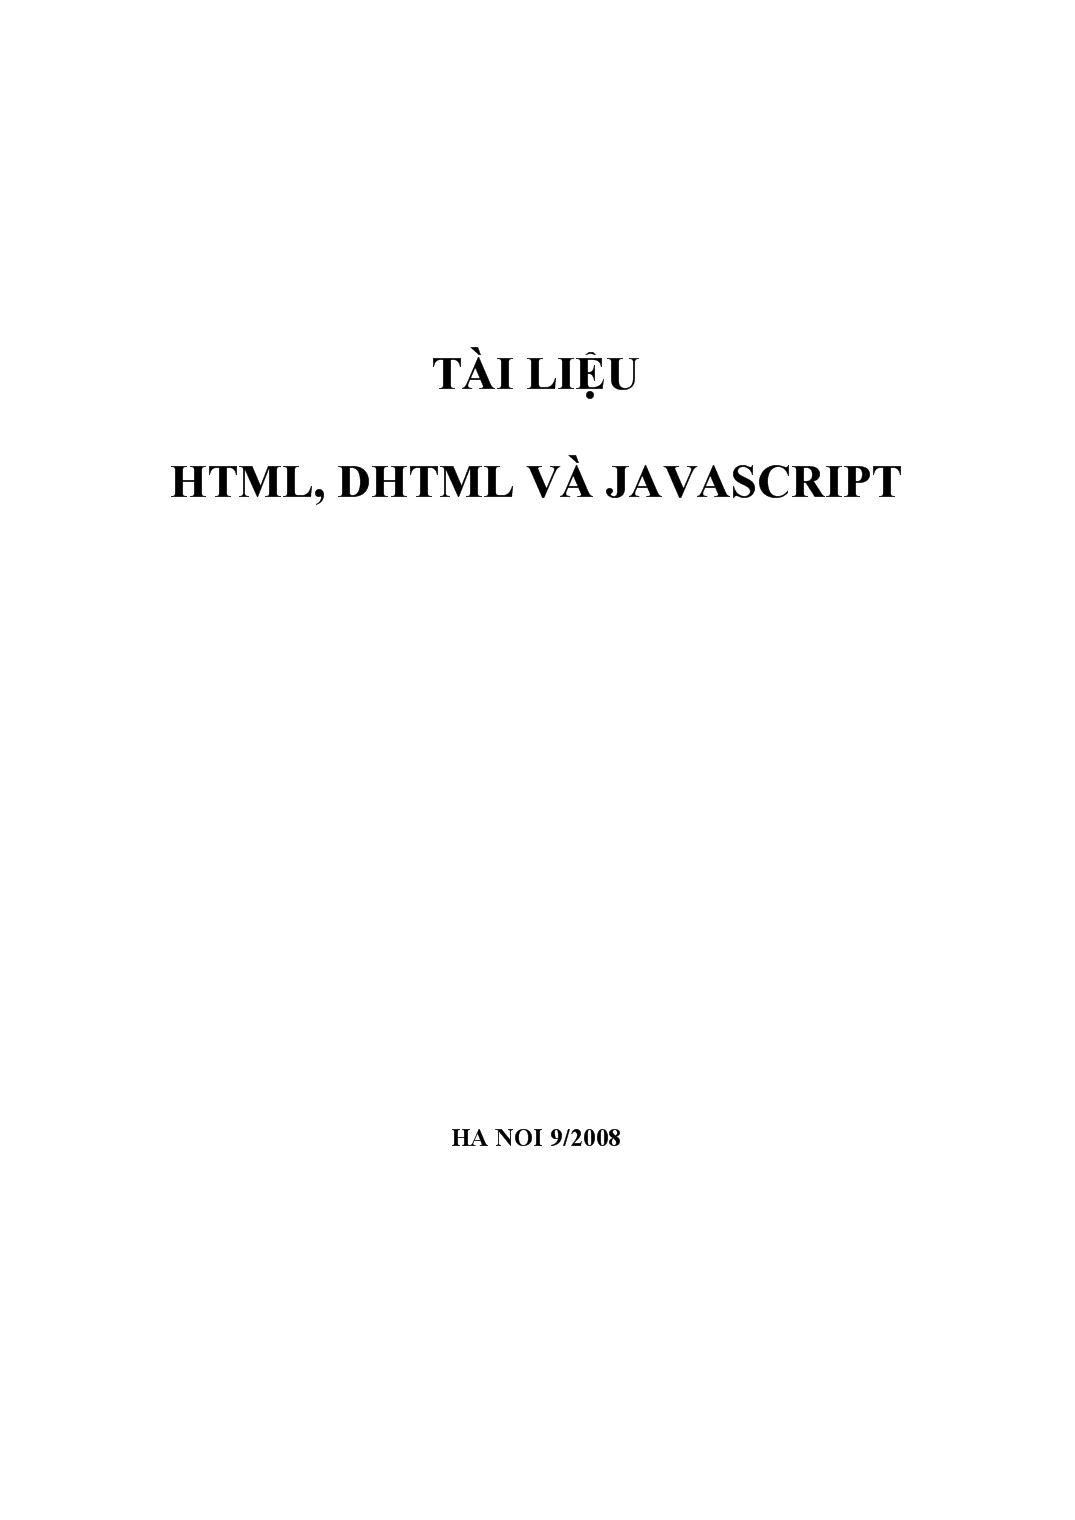 Tài liệu HTML, DHTML và JavaScript trang 1